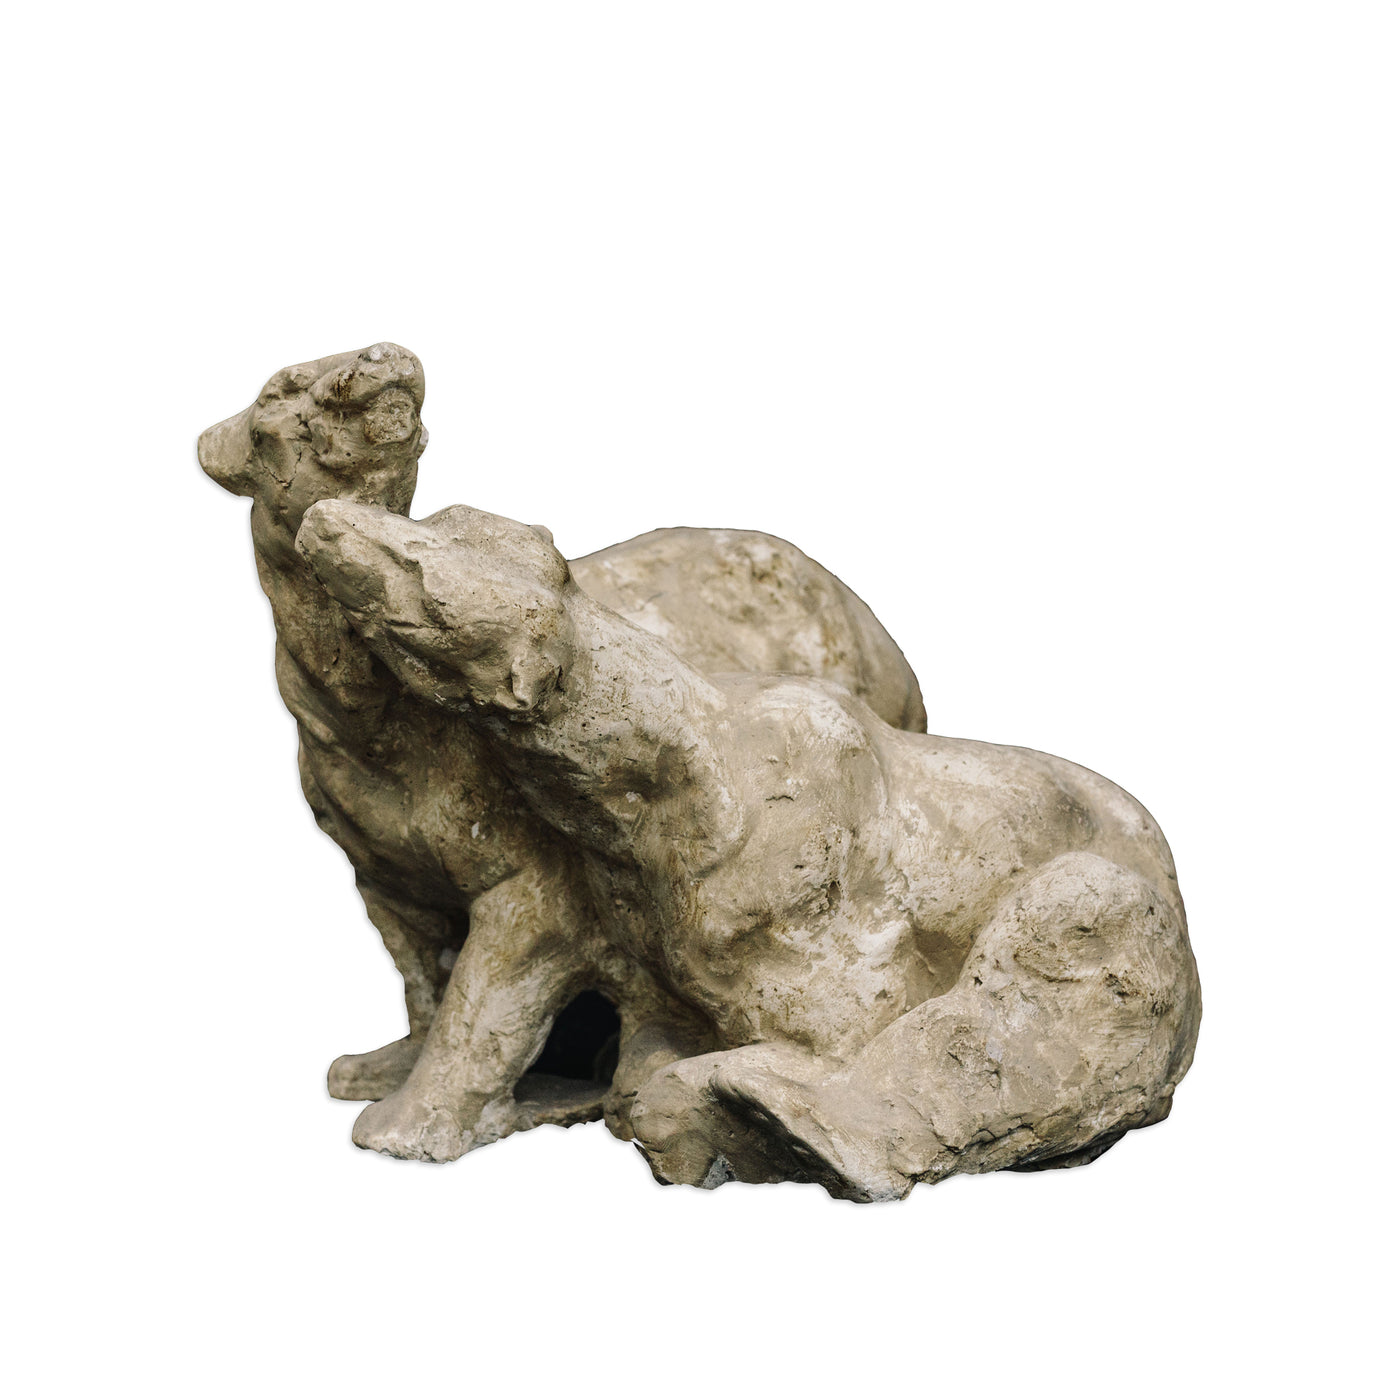 socha medvědů ze sádry, Romanelli studio, italské sochy, socha zvířat